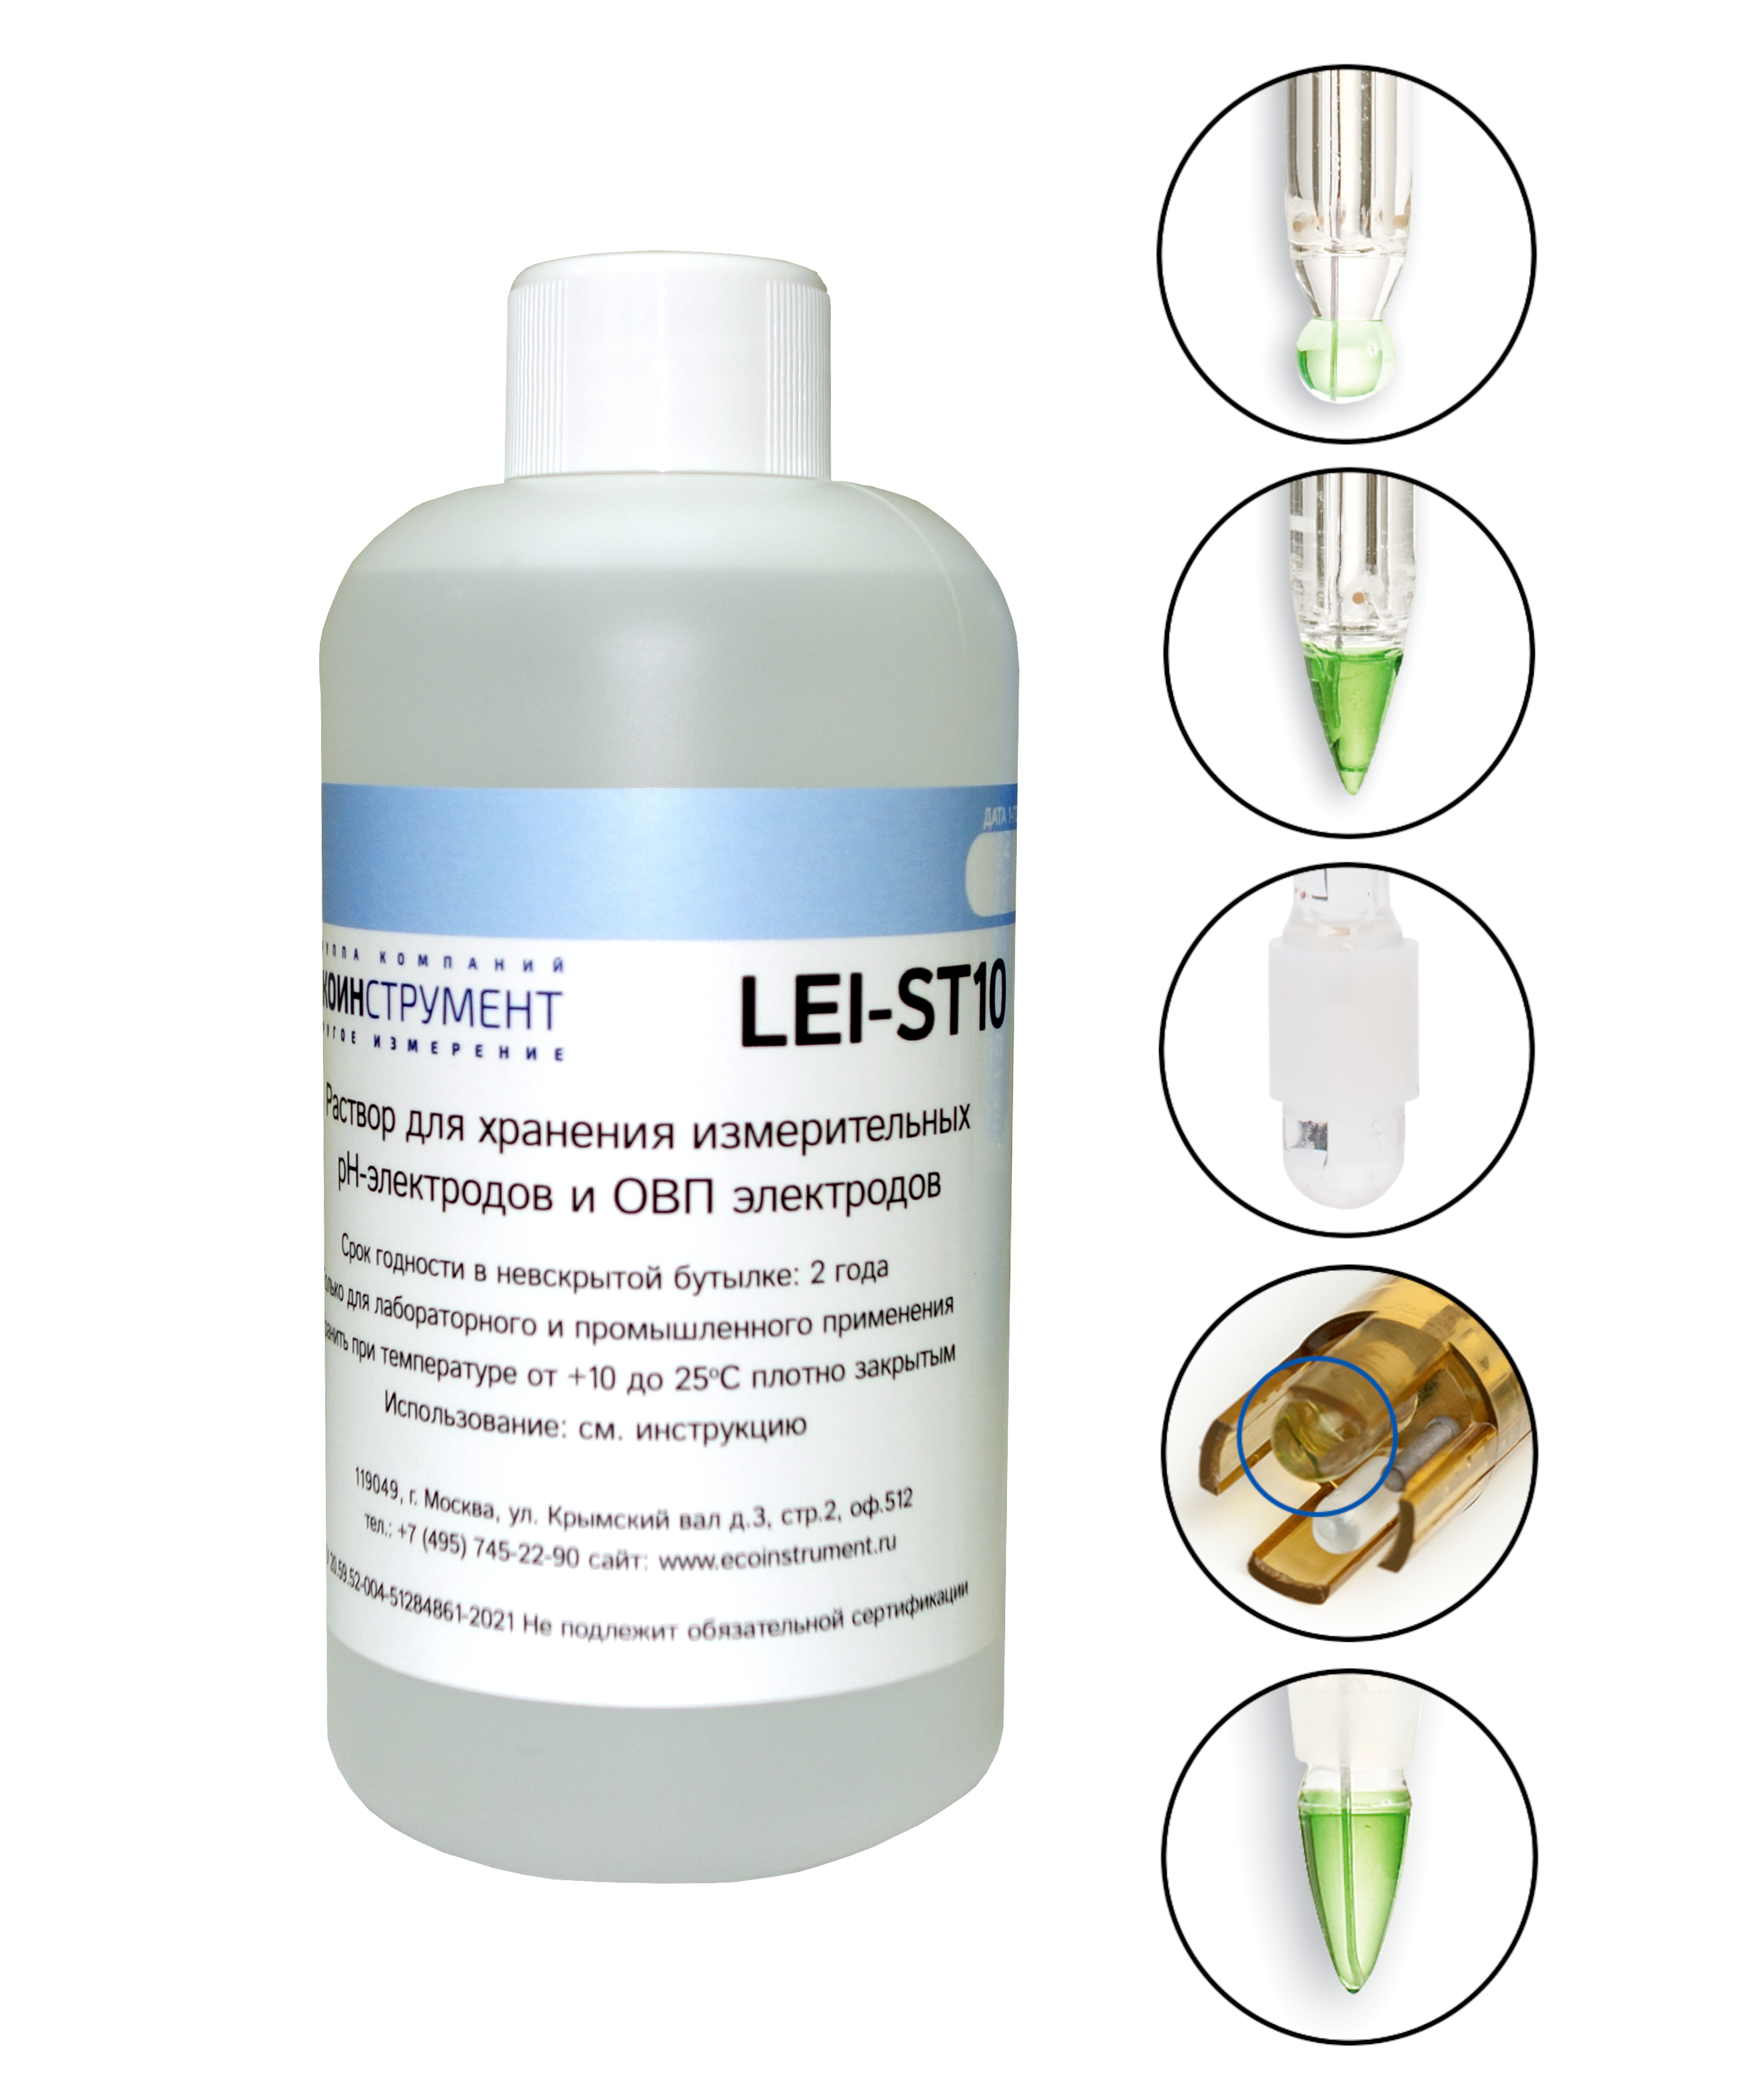 محلول LEI-ST10 برای ذخیره سازی الکترود های pH و ORP